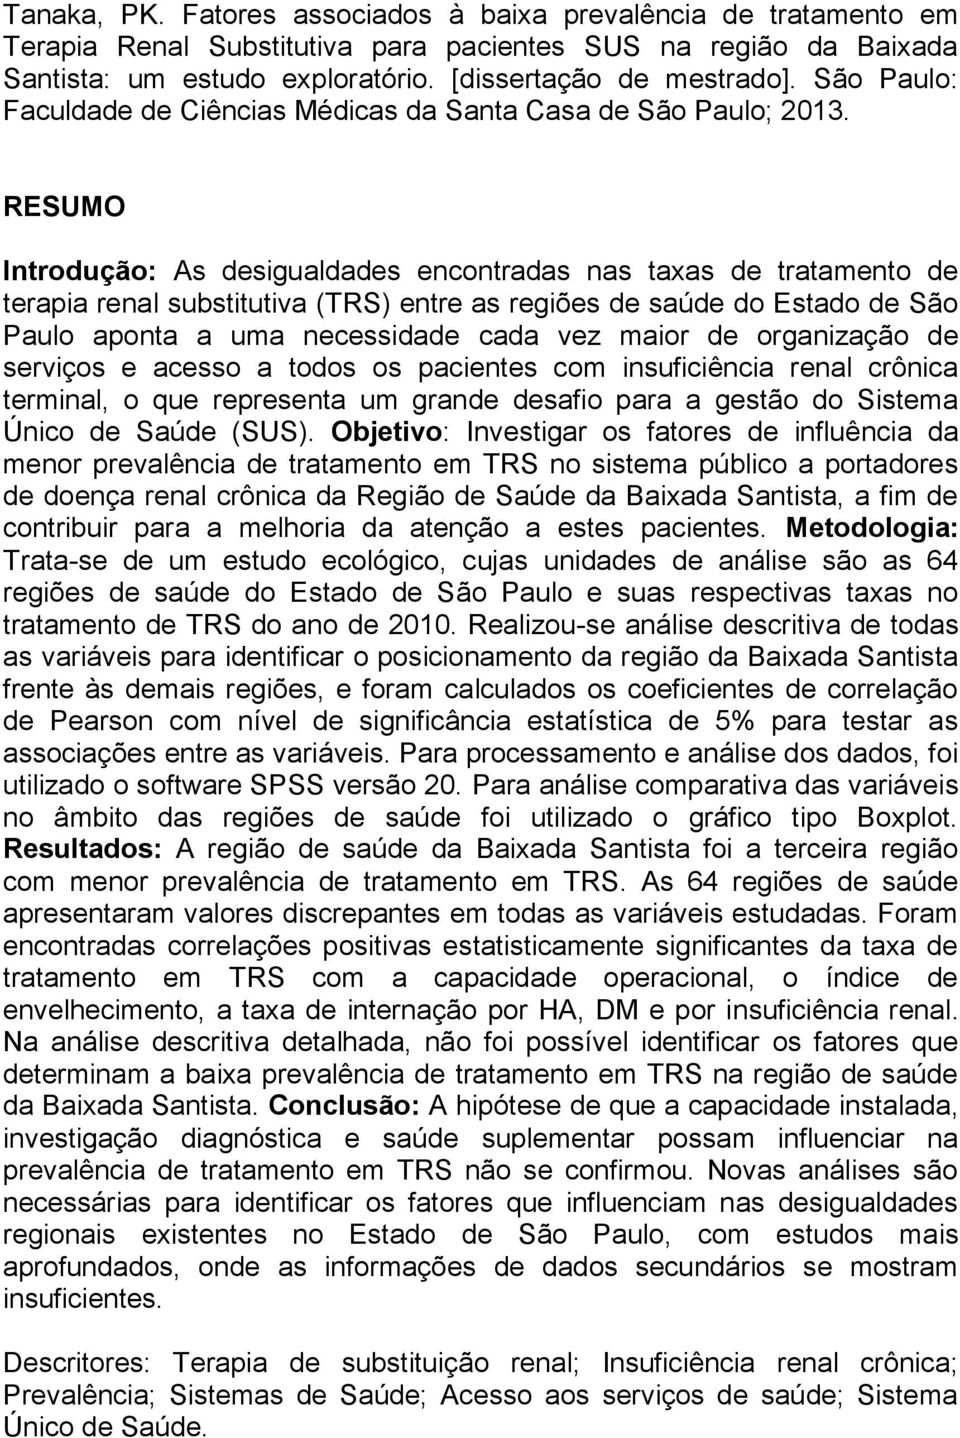 RESUMO Introdução: As desigualdades encontradas nas taxas de tratamento de terapia renal substitutiva (TRS) entre as regiões de saúde do Estado de São Paulo aponta a uma necessidade cada vez maior de